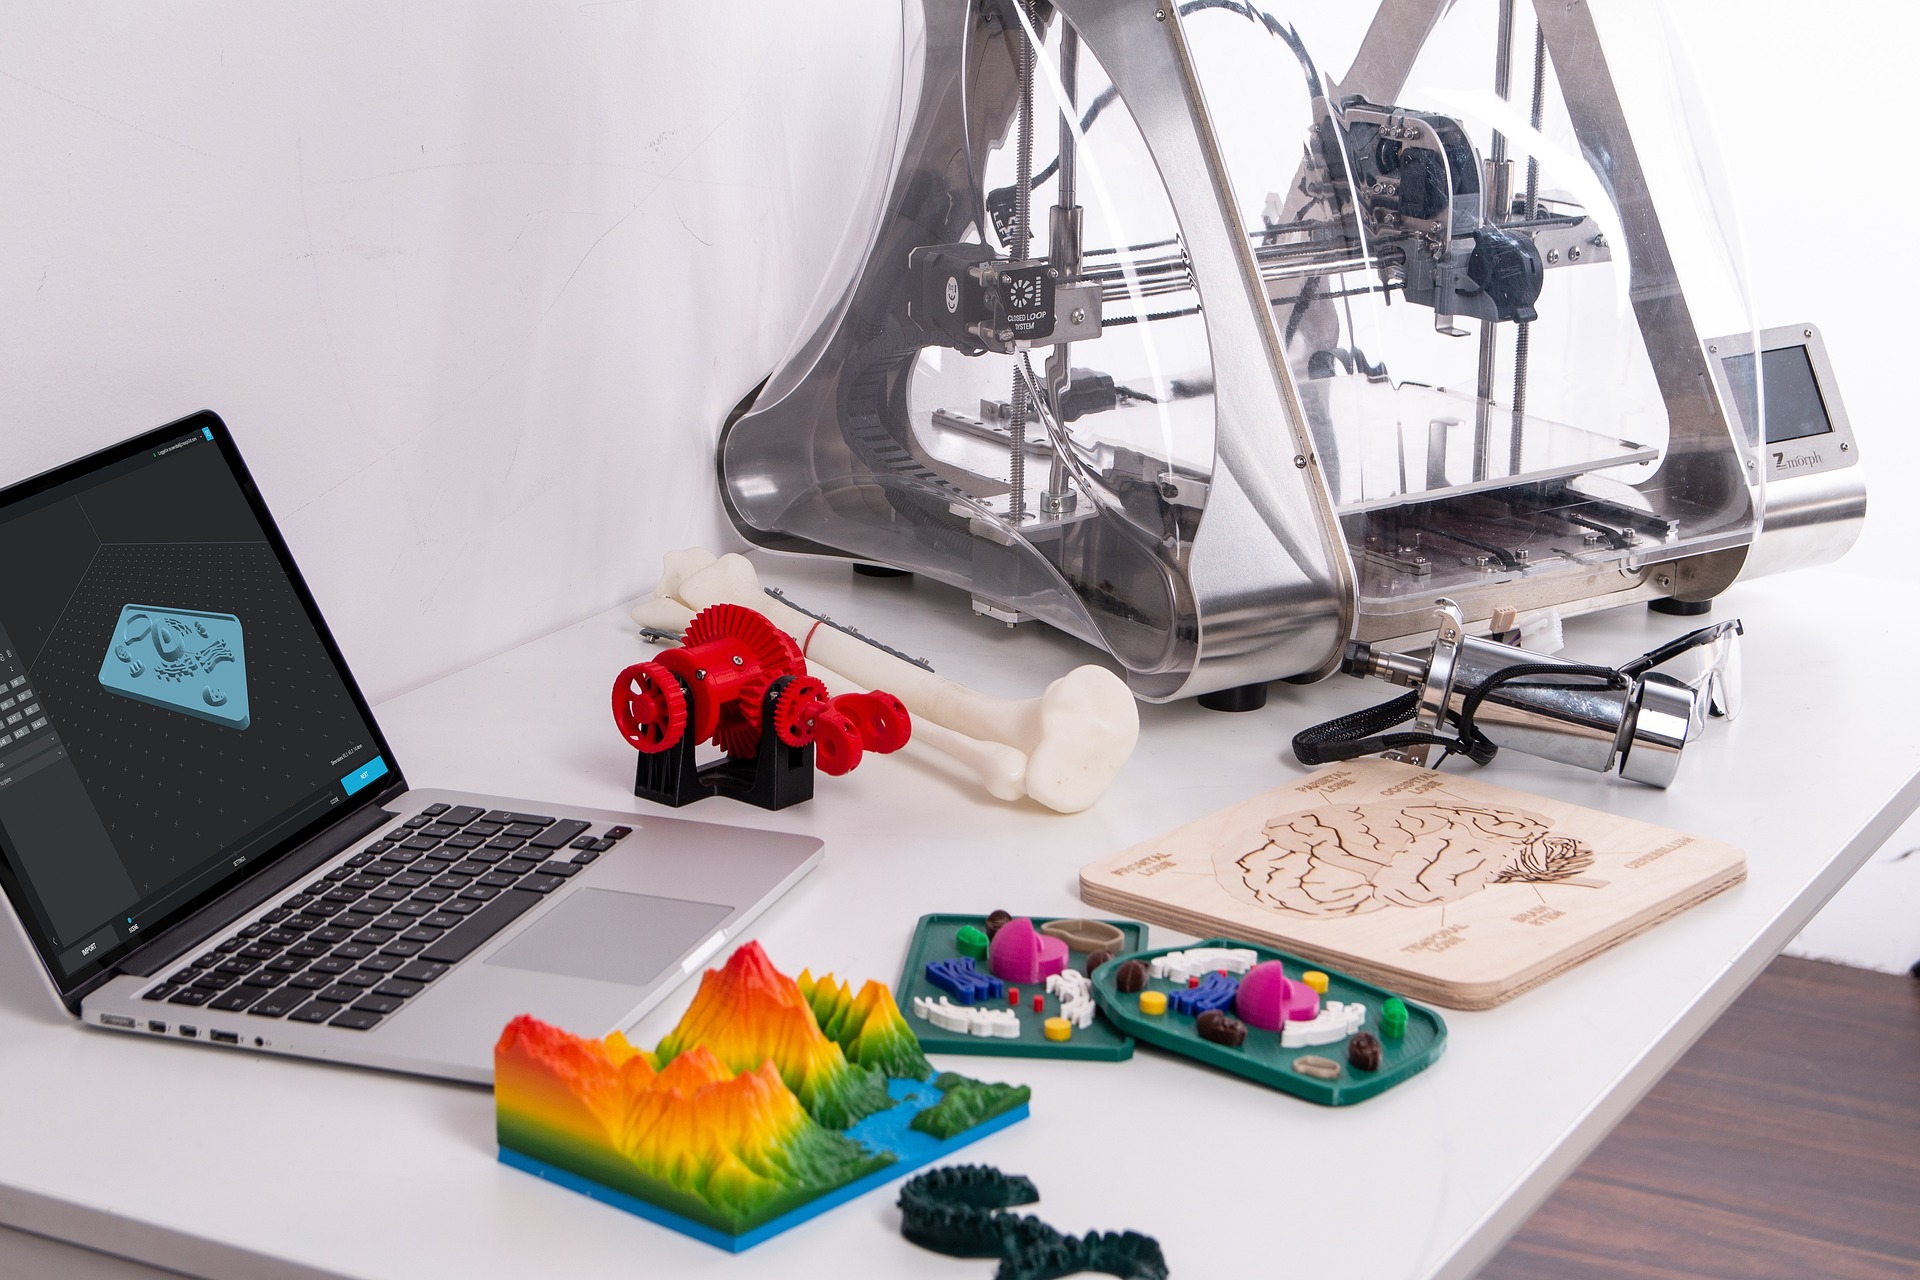 Beleggen in 3D printing aandelen van 3D print bedrijven